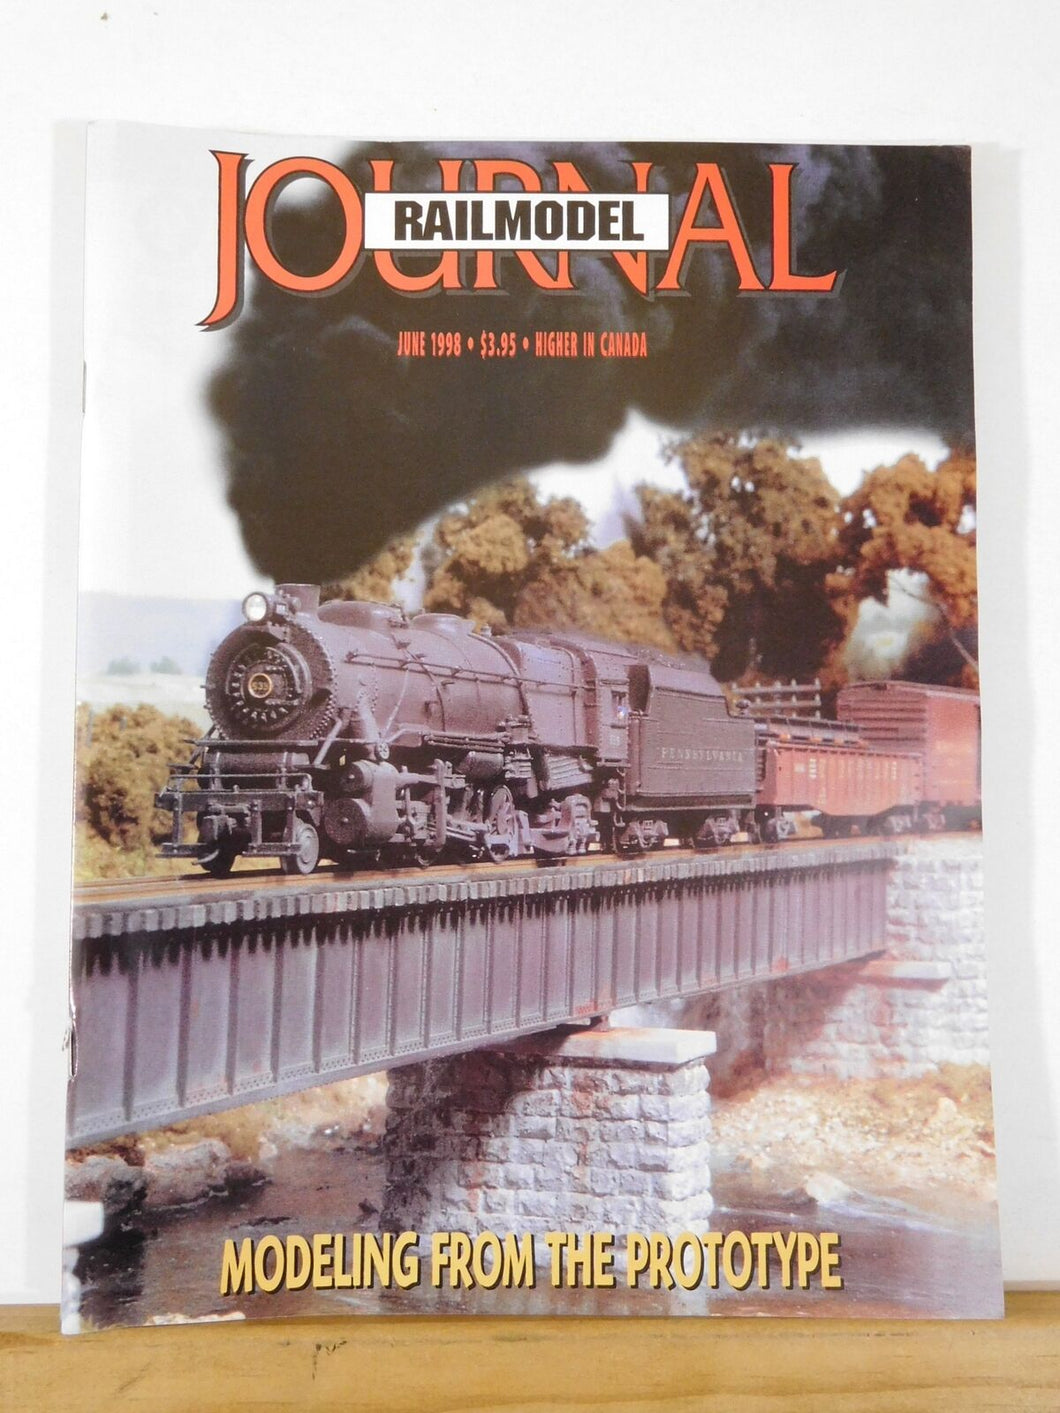 Railmodel Journal 1998 June Modeling from the Prototype